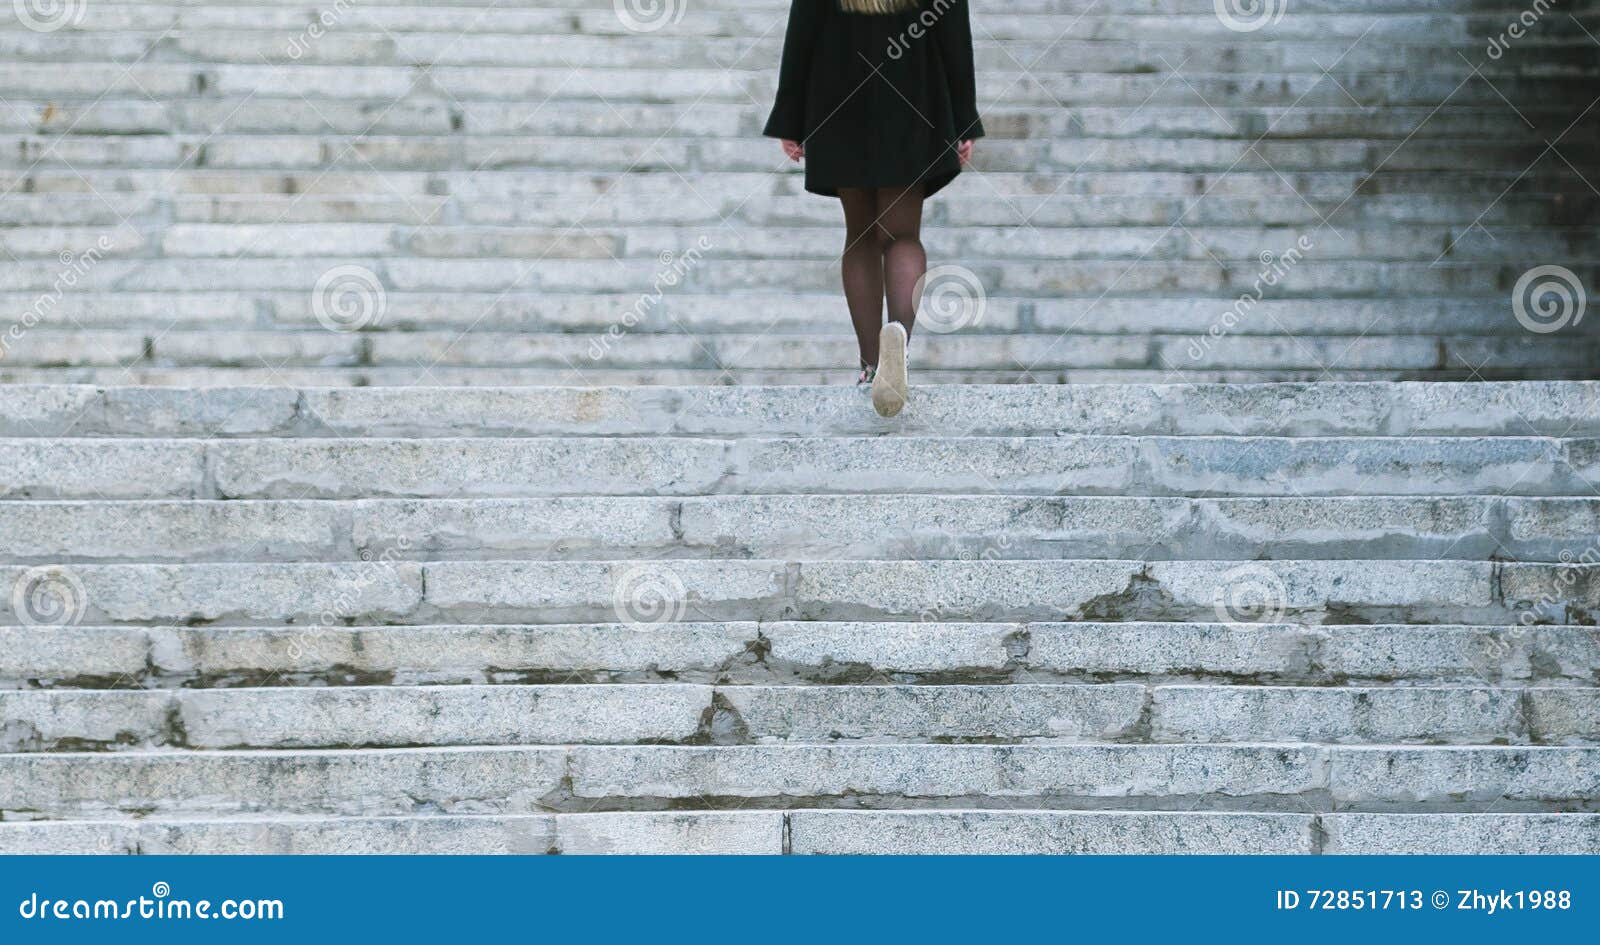 Поднимается снизу вверх. Девочка идет по лестнице вверх. Девушка идет по лестнице. Девушка по лестнице вверх. Девушка спускается по лестнице в платье.